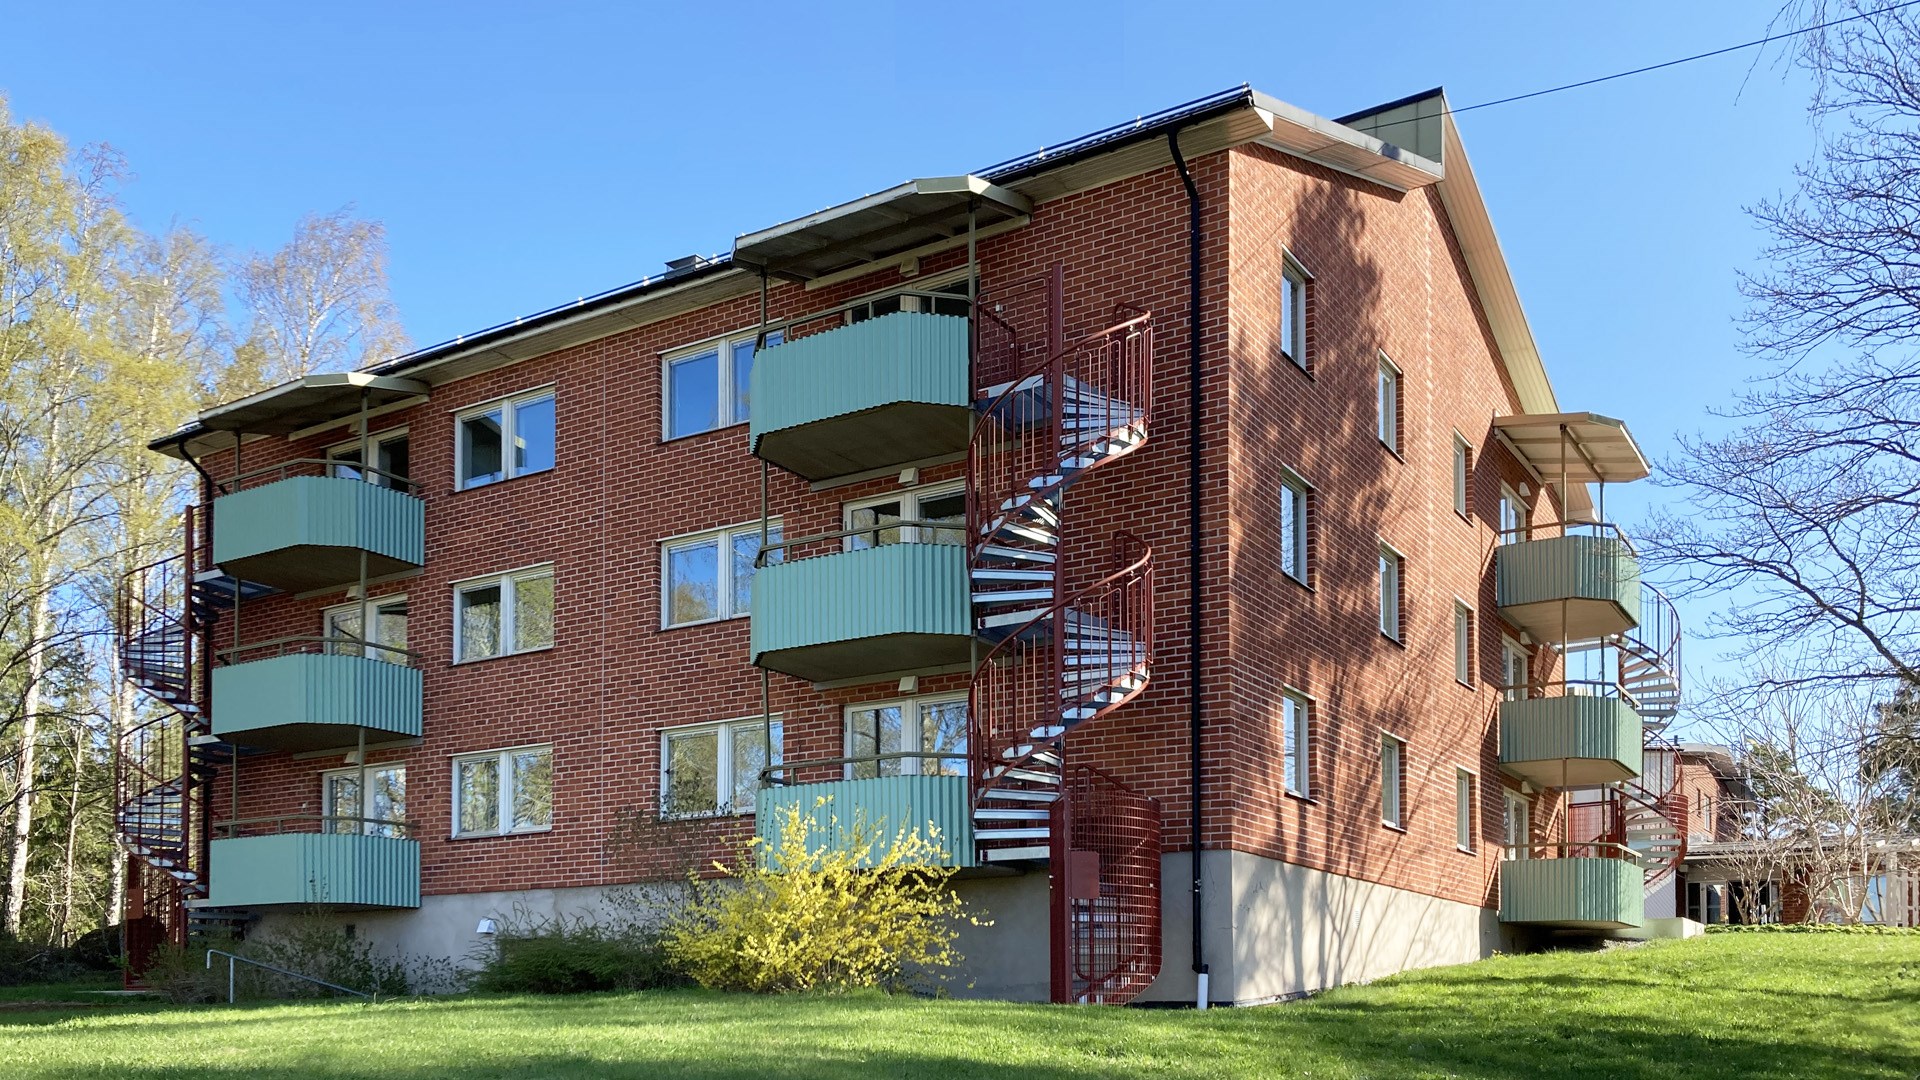 Fasad till trevåningshus med balkonger och spiraltrappor